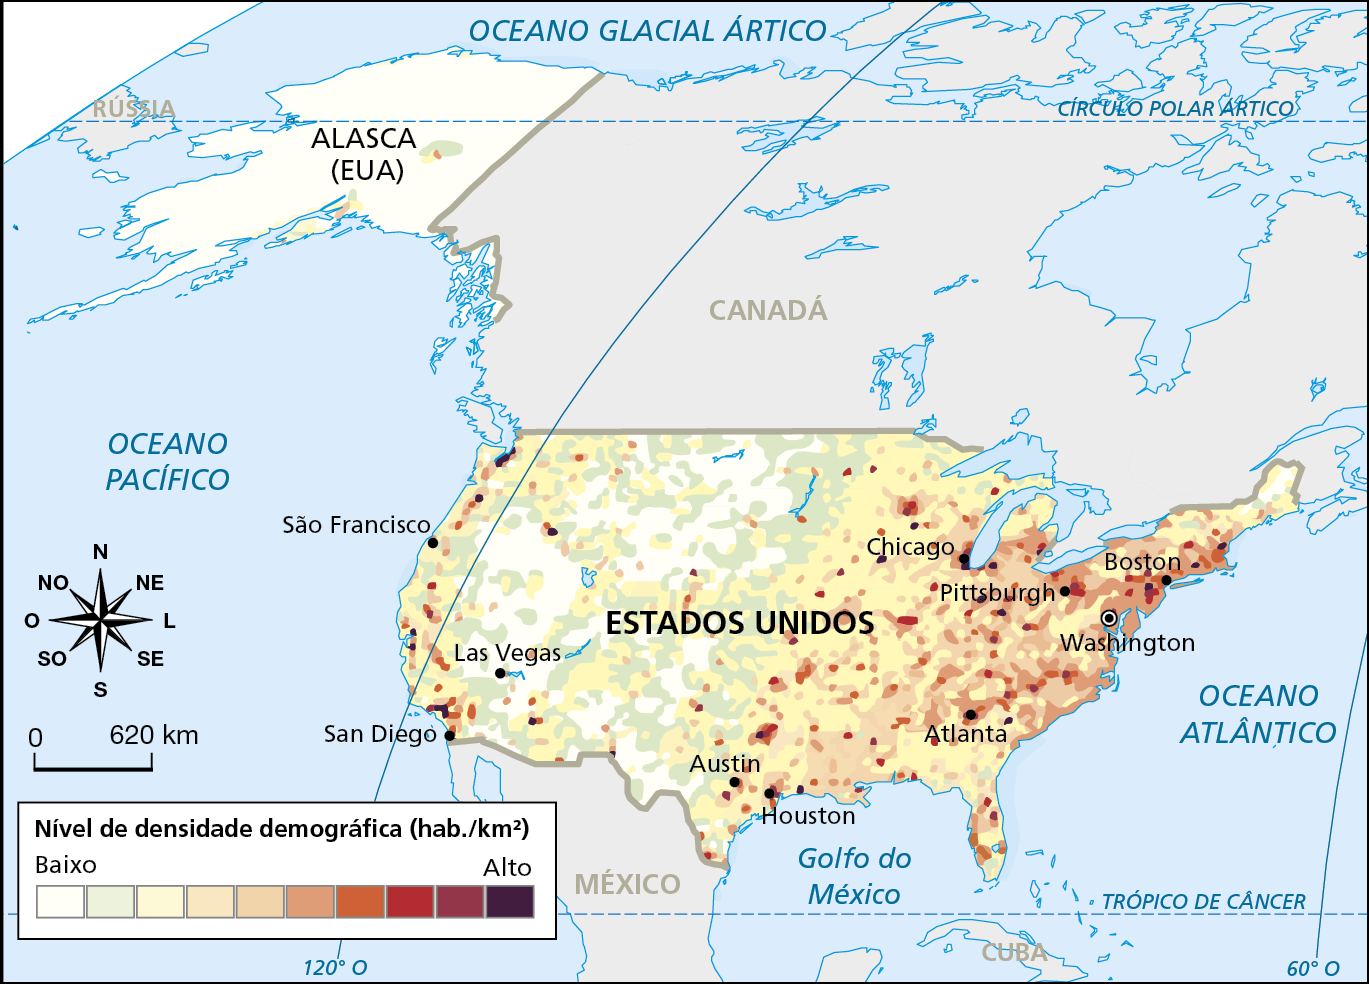 Mapa. Estados Unidos: nível de densidade demográfica e megalópoles (2015)
Trata-se de uma representação do território da América do Norte (exceto o sul do México e o extremo leste do Canadá), com destaque para os Estados Unidos, incluindo o Alasca. O mapa representa o nível de densidade demográfica (habitantes por quilômetro quadrado) dos Estados Unidos. As cores mais claras, representam níveis de densidade mais baixos, enquanto cores mais escuras, representam níveis de densidade mais altos.
Áreas com baixa densidade demográfica: Alasca, região central e meio oeste dos Estados Unidos. 
Áreas de média densidade demográfica: porções centro-leste (dos Grandes Lagos, ao norte, até o sul, na cidade de Austin), sudeste e extremo nordeste dos Estados Unidos; 
Áreas de alta densidade demográfica: algumas zonas localizadas no nordeste (de Boston até Pittsburgh e Washington), na costa oeste, sobretudo em São Francisco e San Diego, além de algumas manchas regiões sul e sudeste do território, com destaque para Houston e Atlanta. 
Na parte inferior esquerda, rosa dos ventos e escala de 0 a 620 quilômetros.